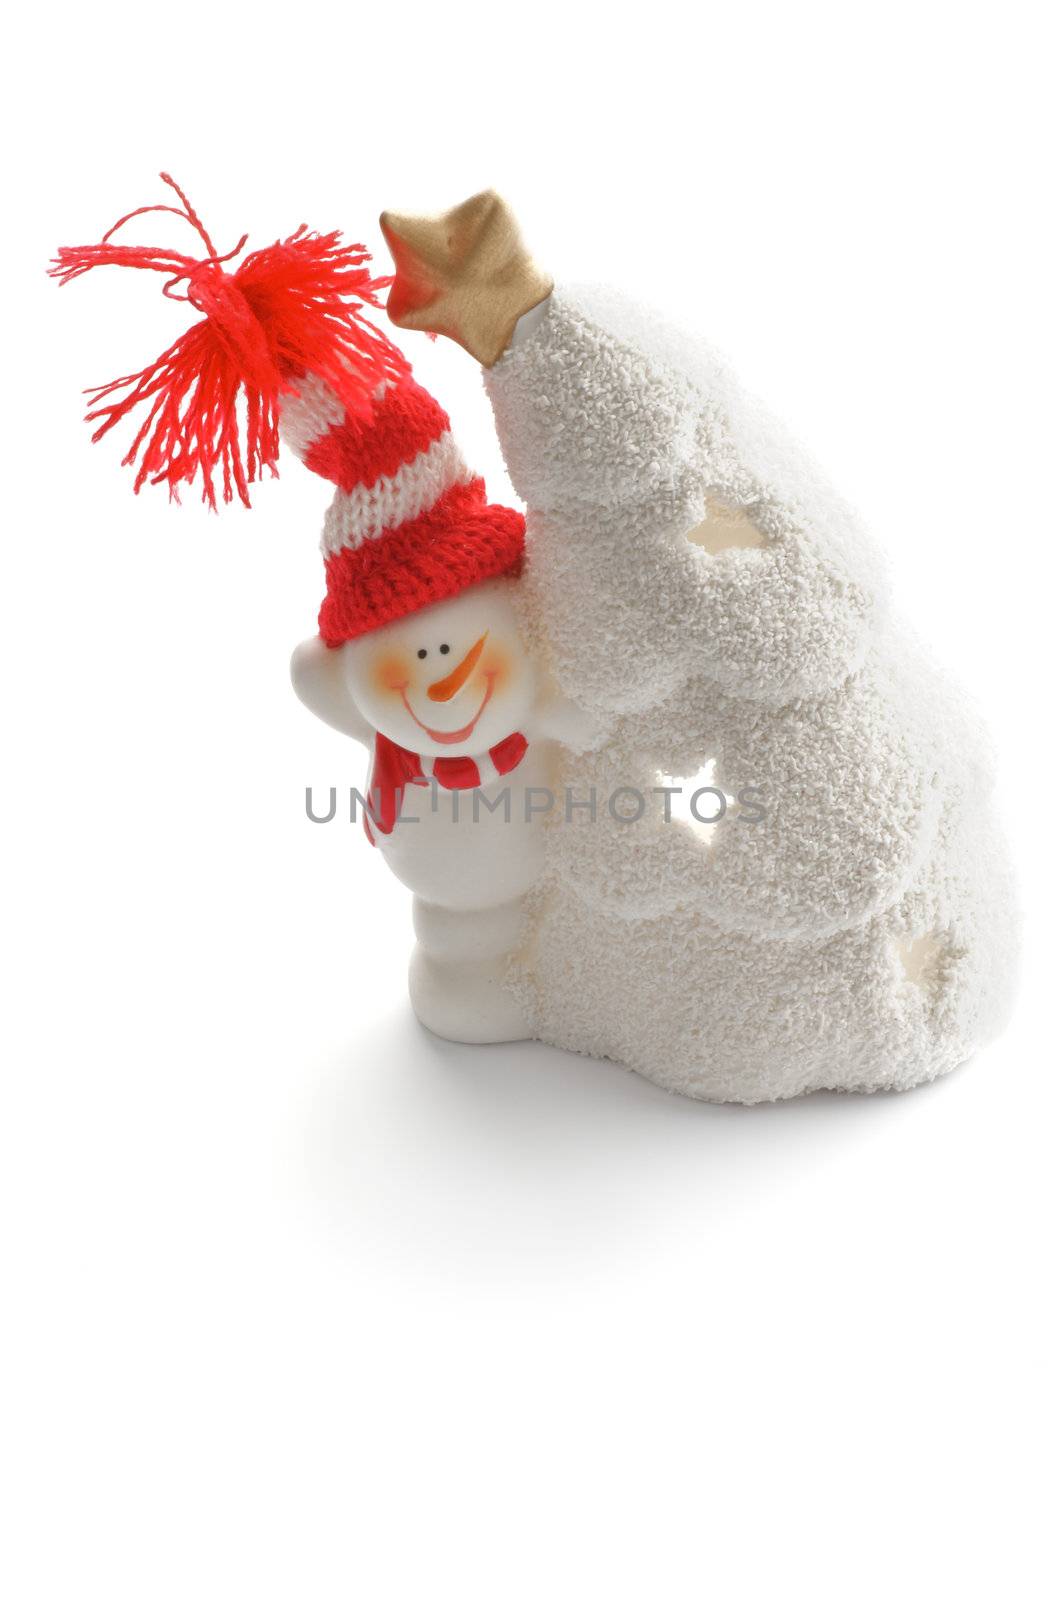 Snowman in Knitted Hat by zhekos